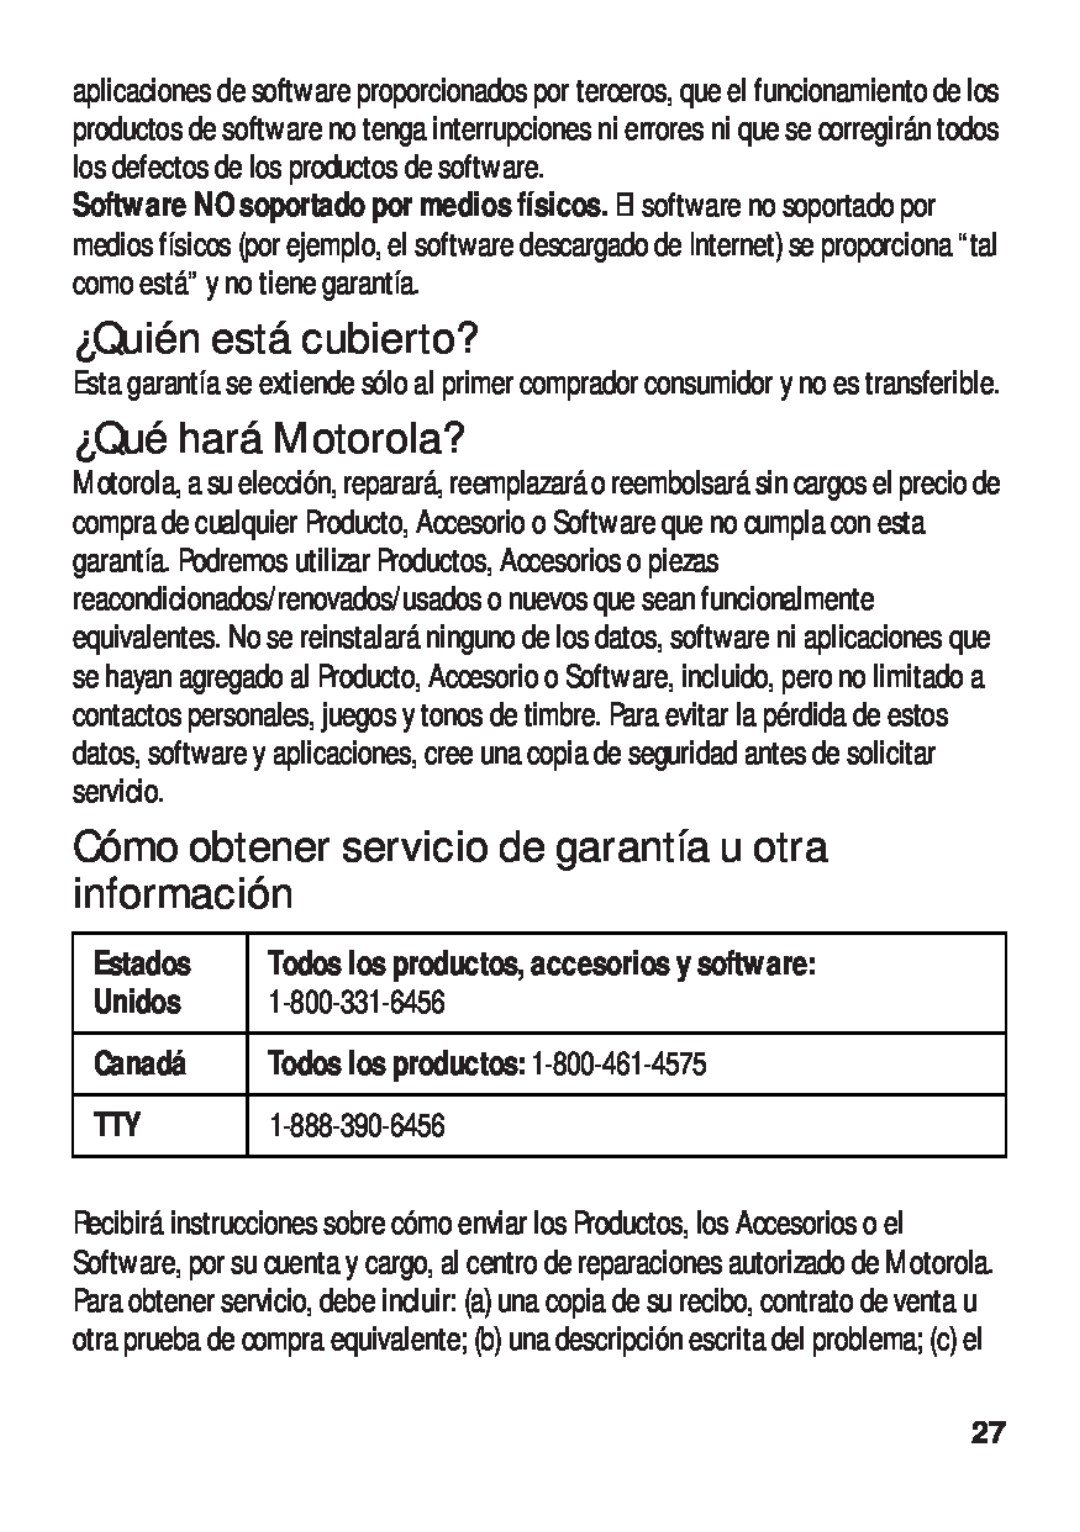 Motorola TX500 manual ¿Quién está cubierto?, ¿Qué hará Motorola?, Unidos, Canadá, Todos los productos 